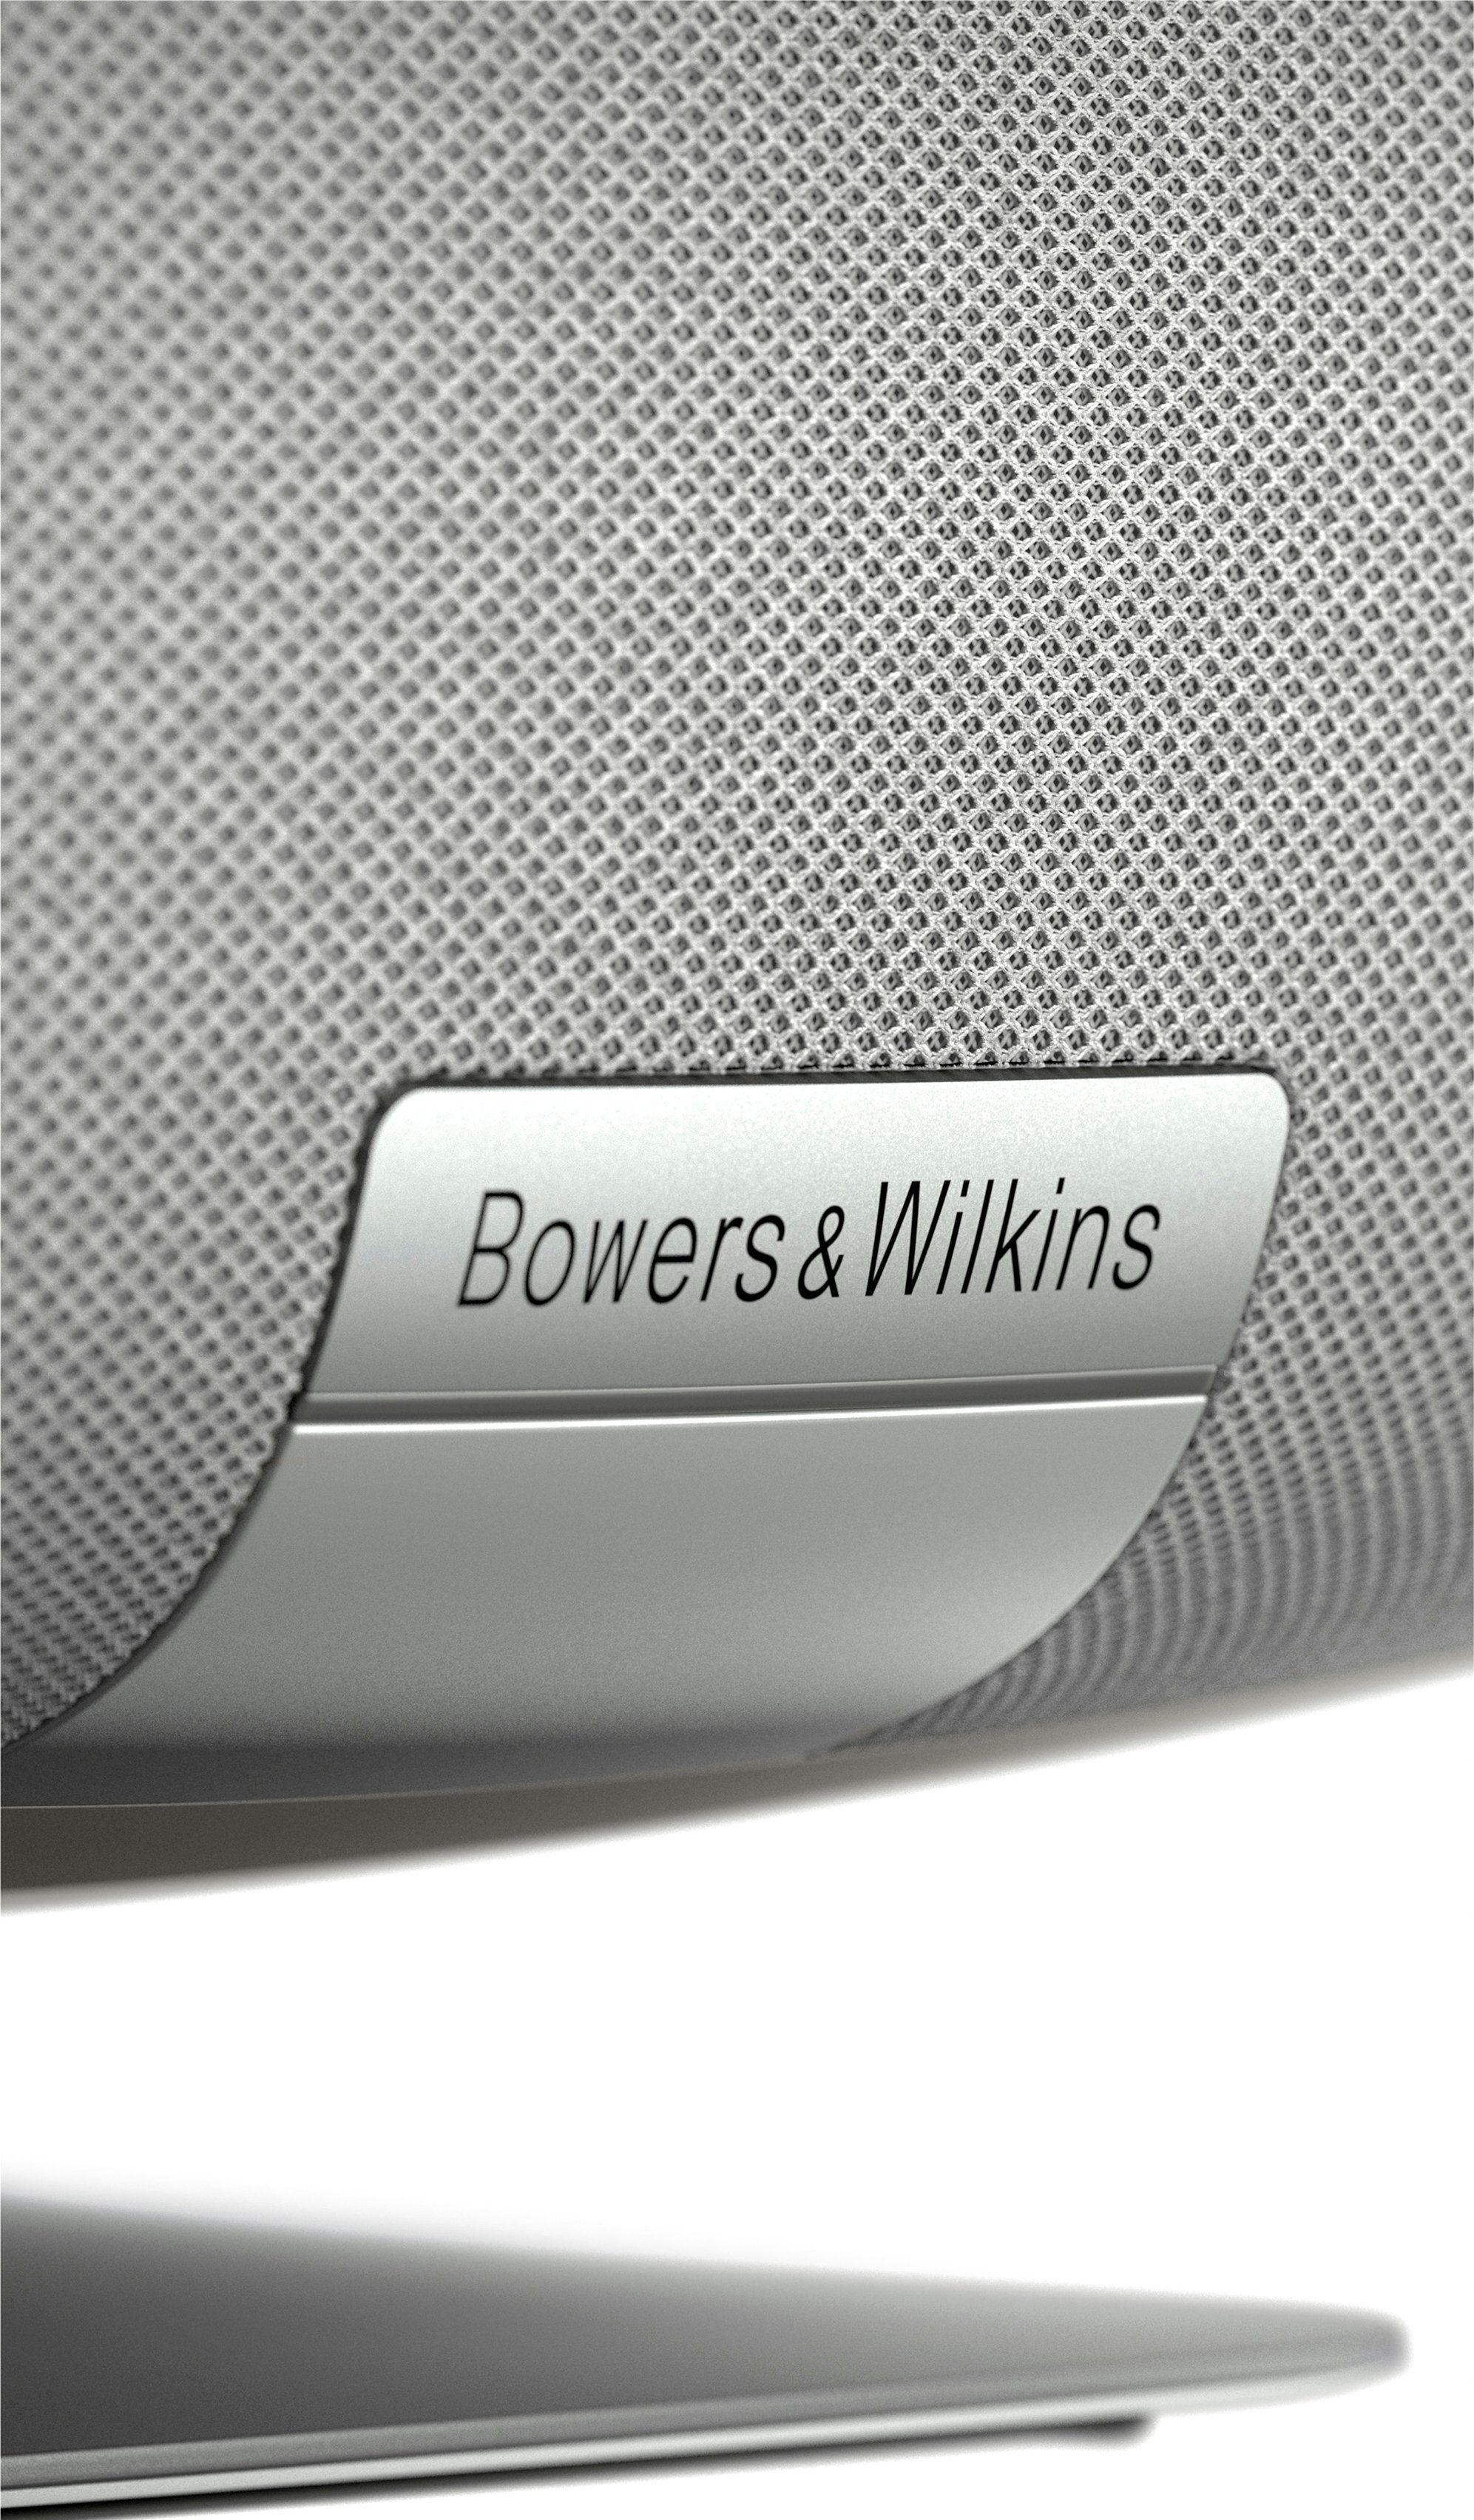 ZEPPELIN Bowers grau Wilkins & 2021 Lautsprecher